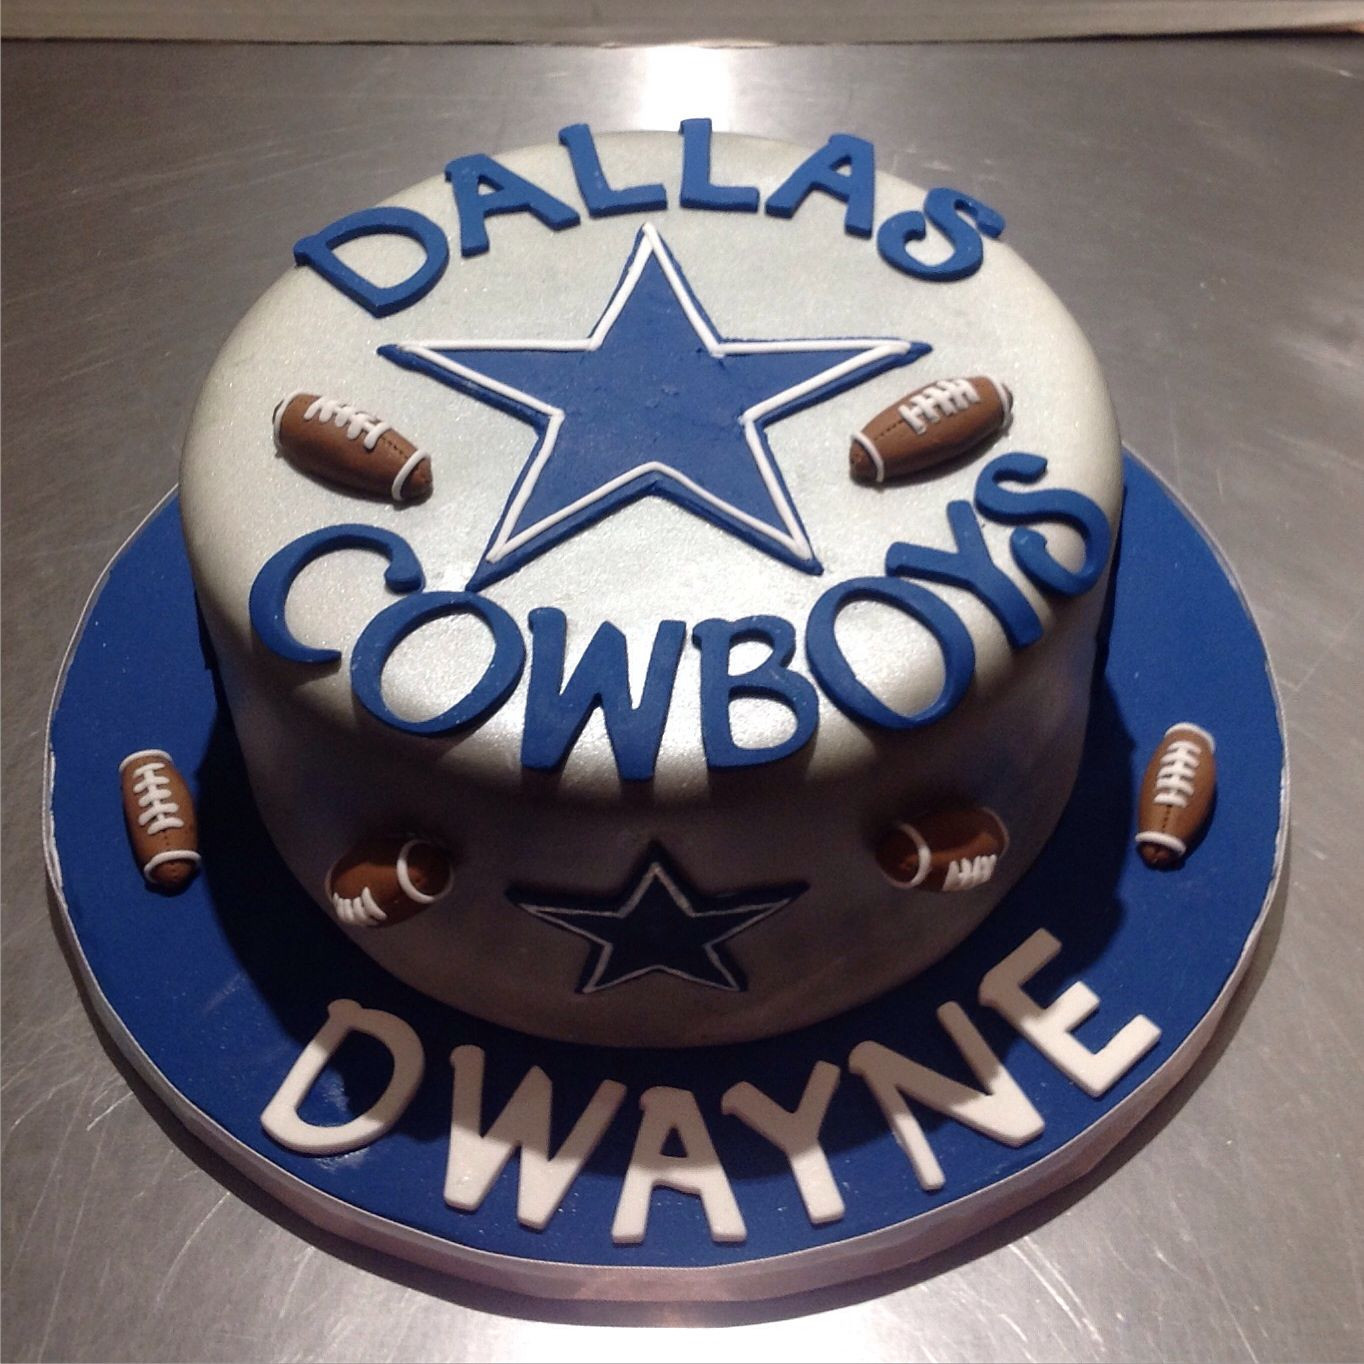 Birthday Cakes Dallas
 Dallas Cowboys cake Cakes Pinterest